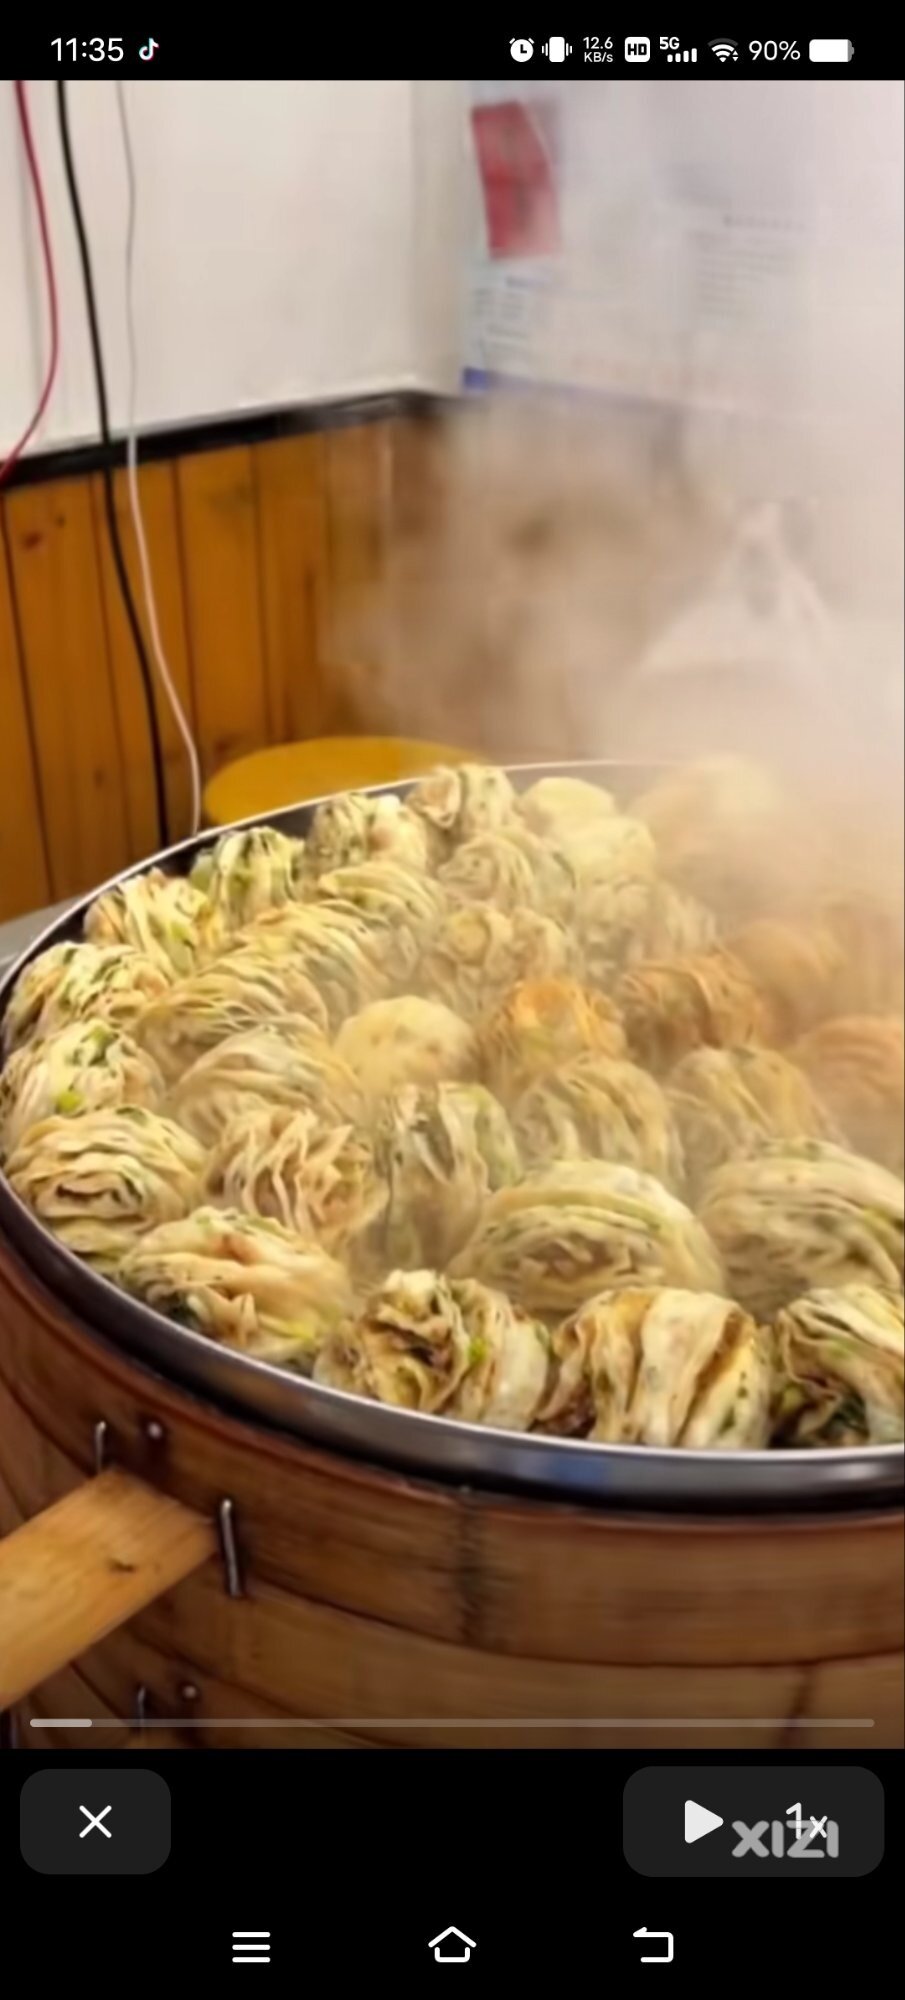 惠东人的饮食创造思维真的强:咸菜汤粉、猪扒包、螺蛳粉。现又肉花卷